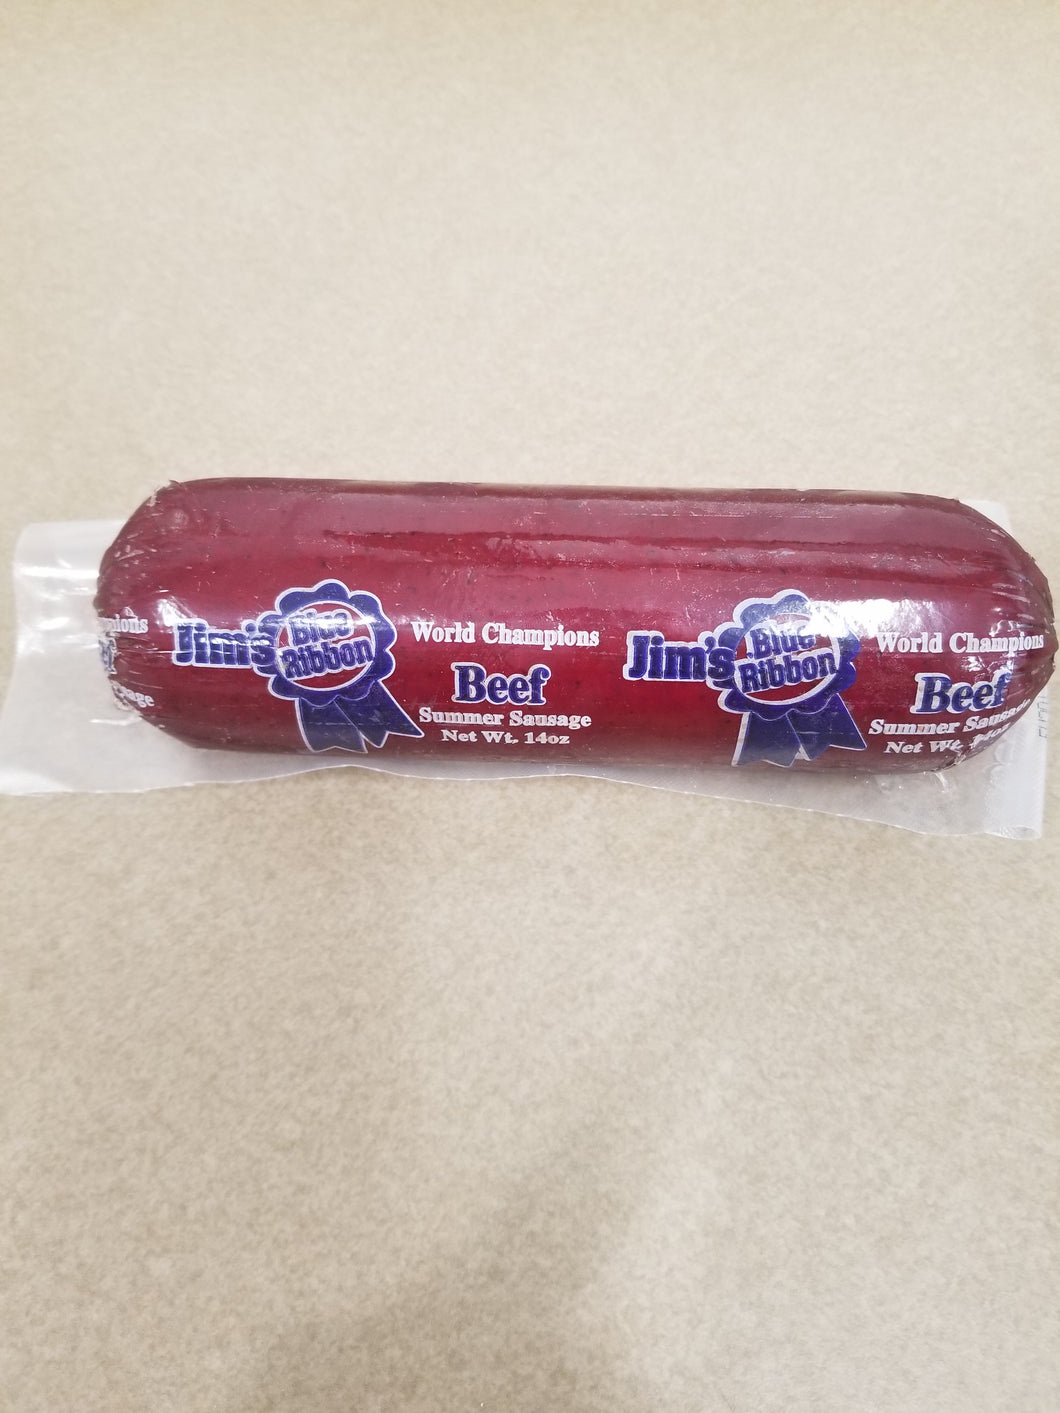 Jims Blue Ribbon Summer Sausage, 14 oz